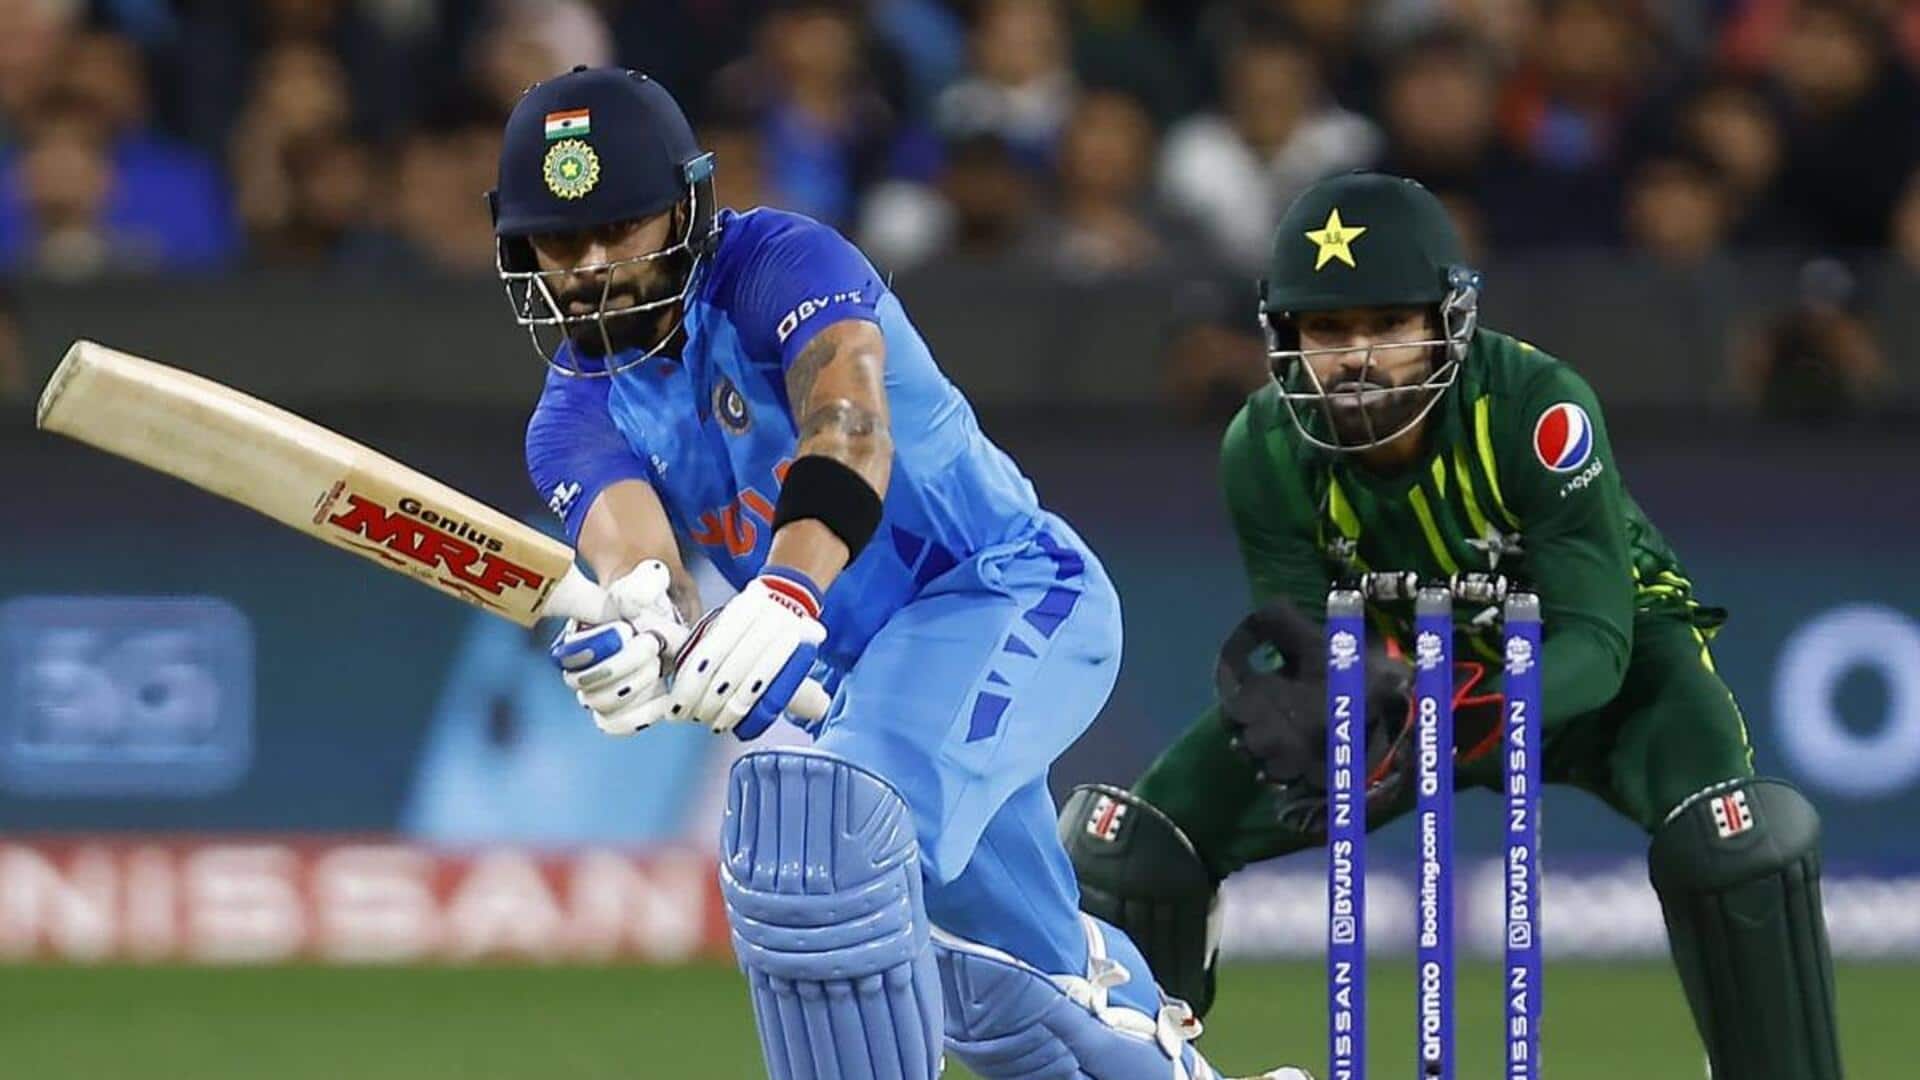 भारत-पाकिस्तान के बीच खेले गए आखिरी 5 वनडे में कैसा रहा दोनों टीमों का प्रदर्शन? 